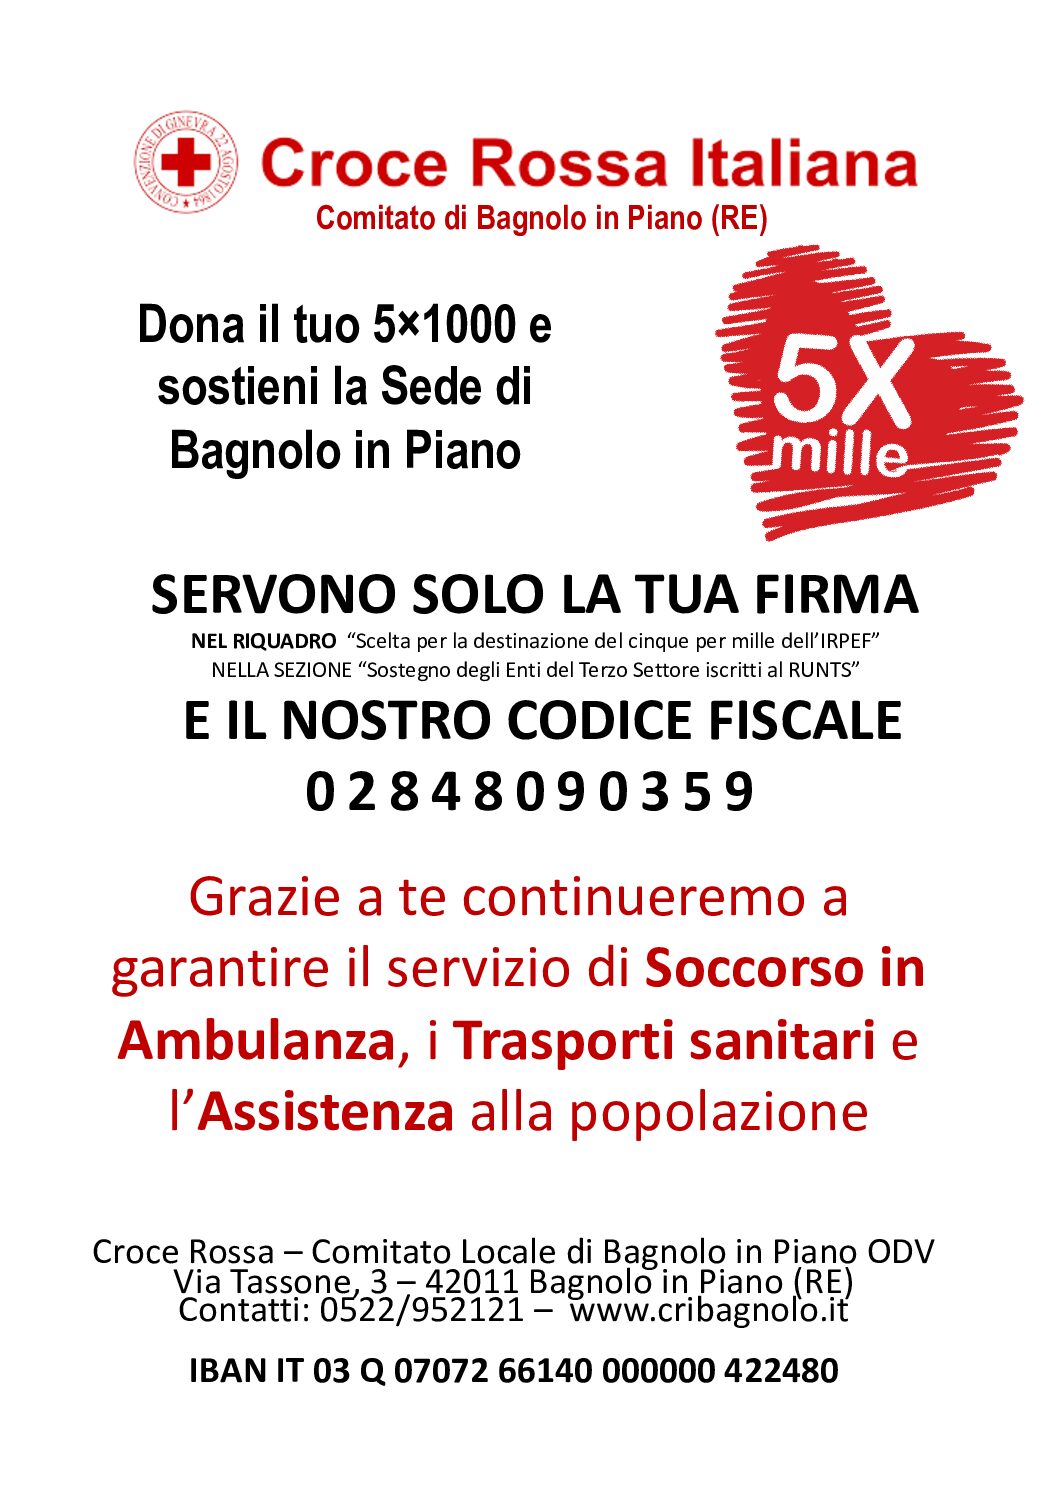 Dona il 5×1000 alla Croce Rossa Italiana di Bagnolo in Piano